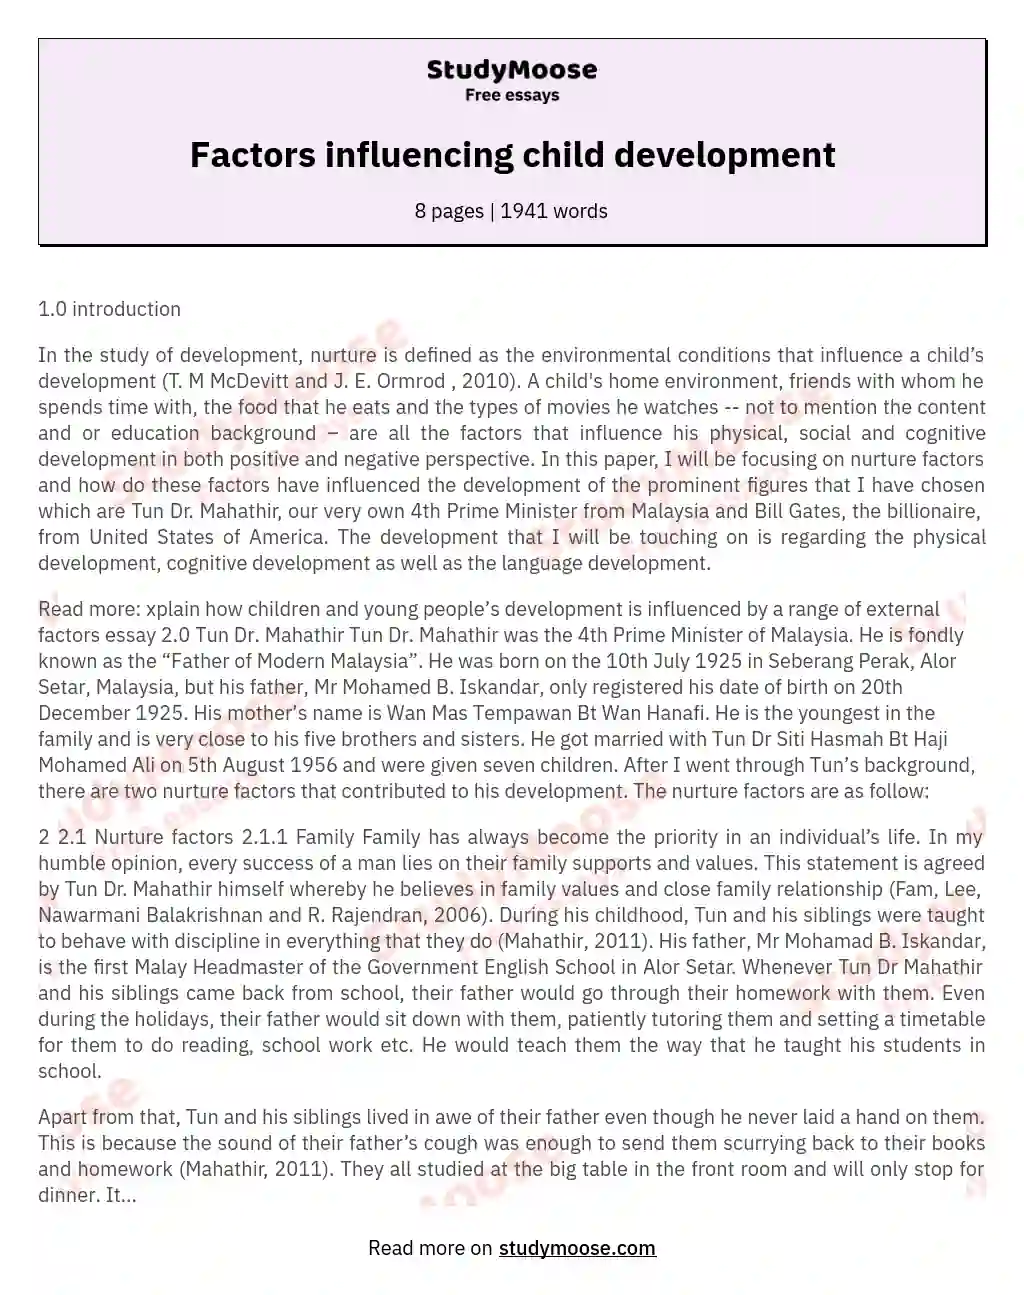 Factors influencing child development